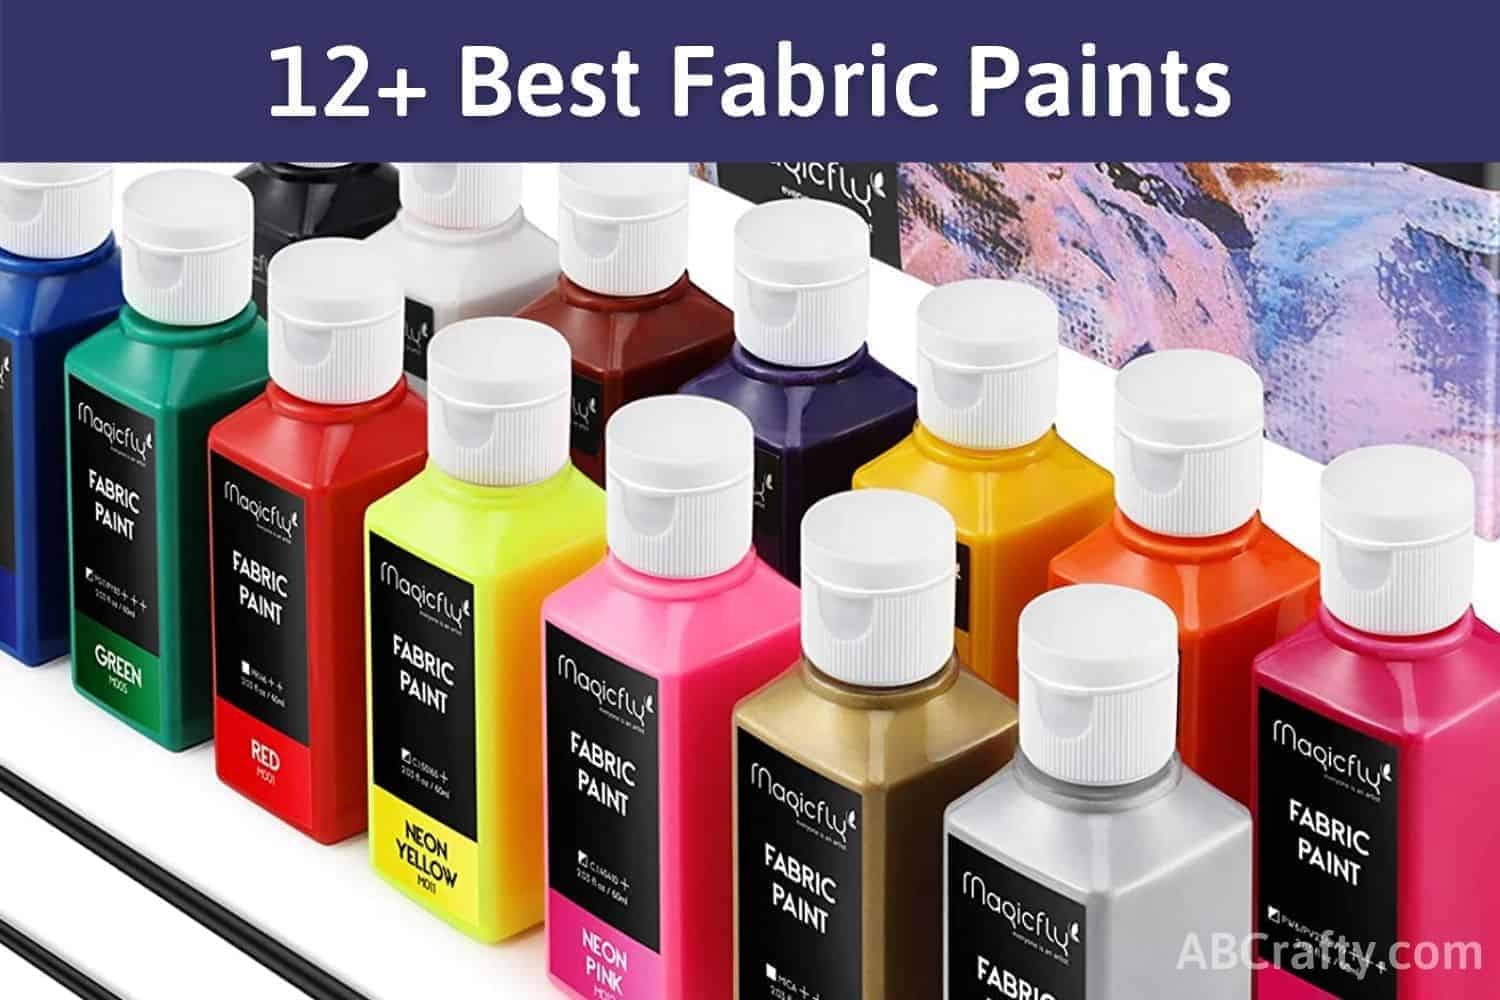 Jacquard Textile Paint 2.25 oz Black & White Fabric Paint Set